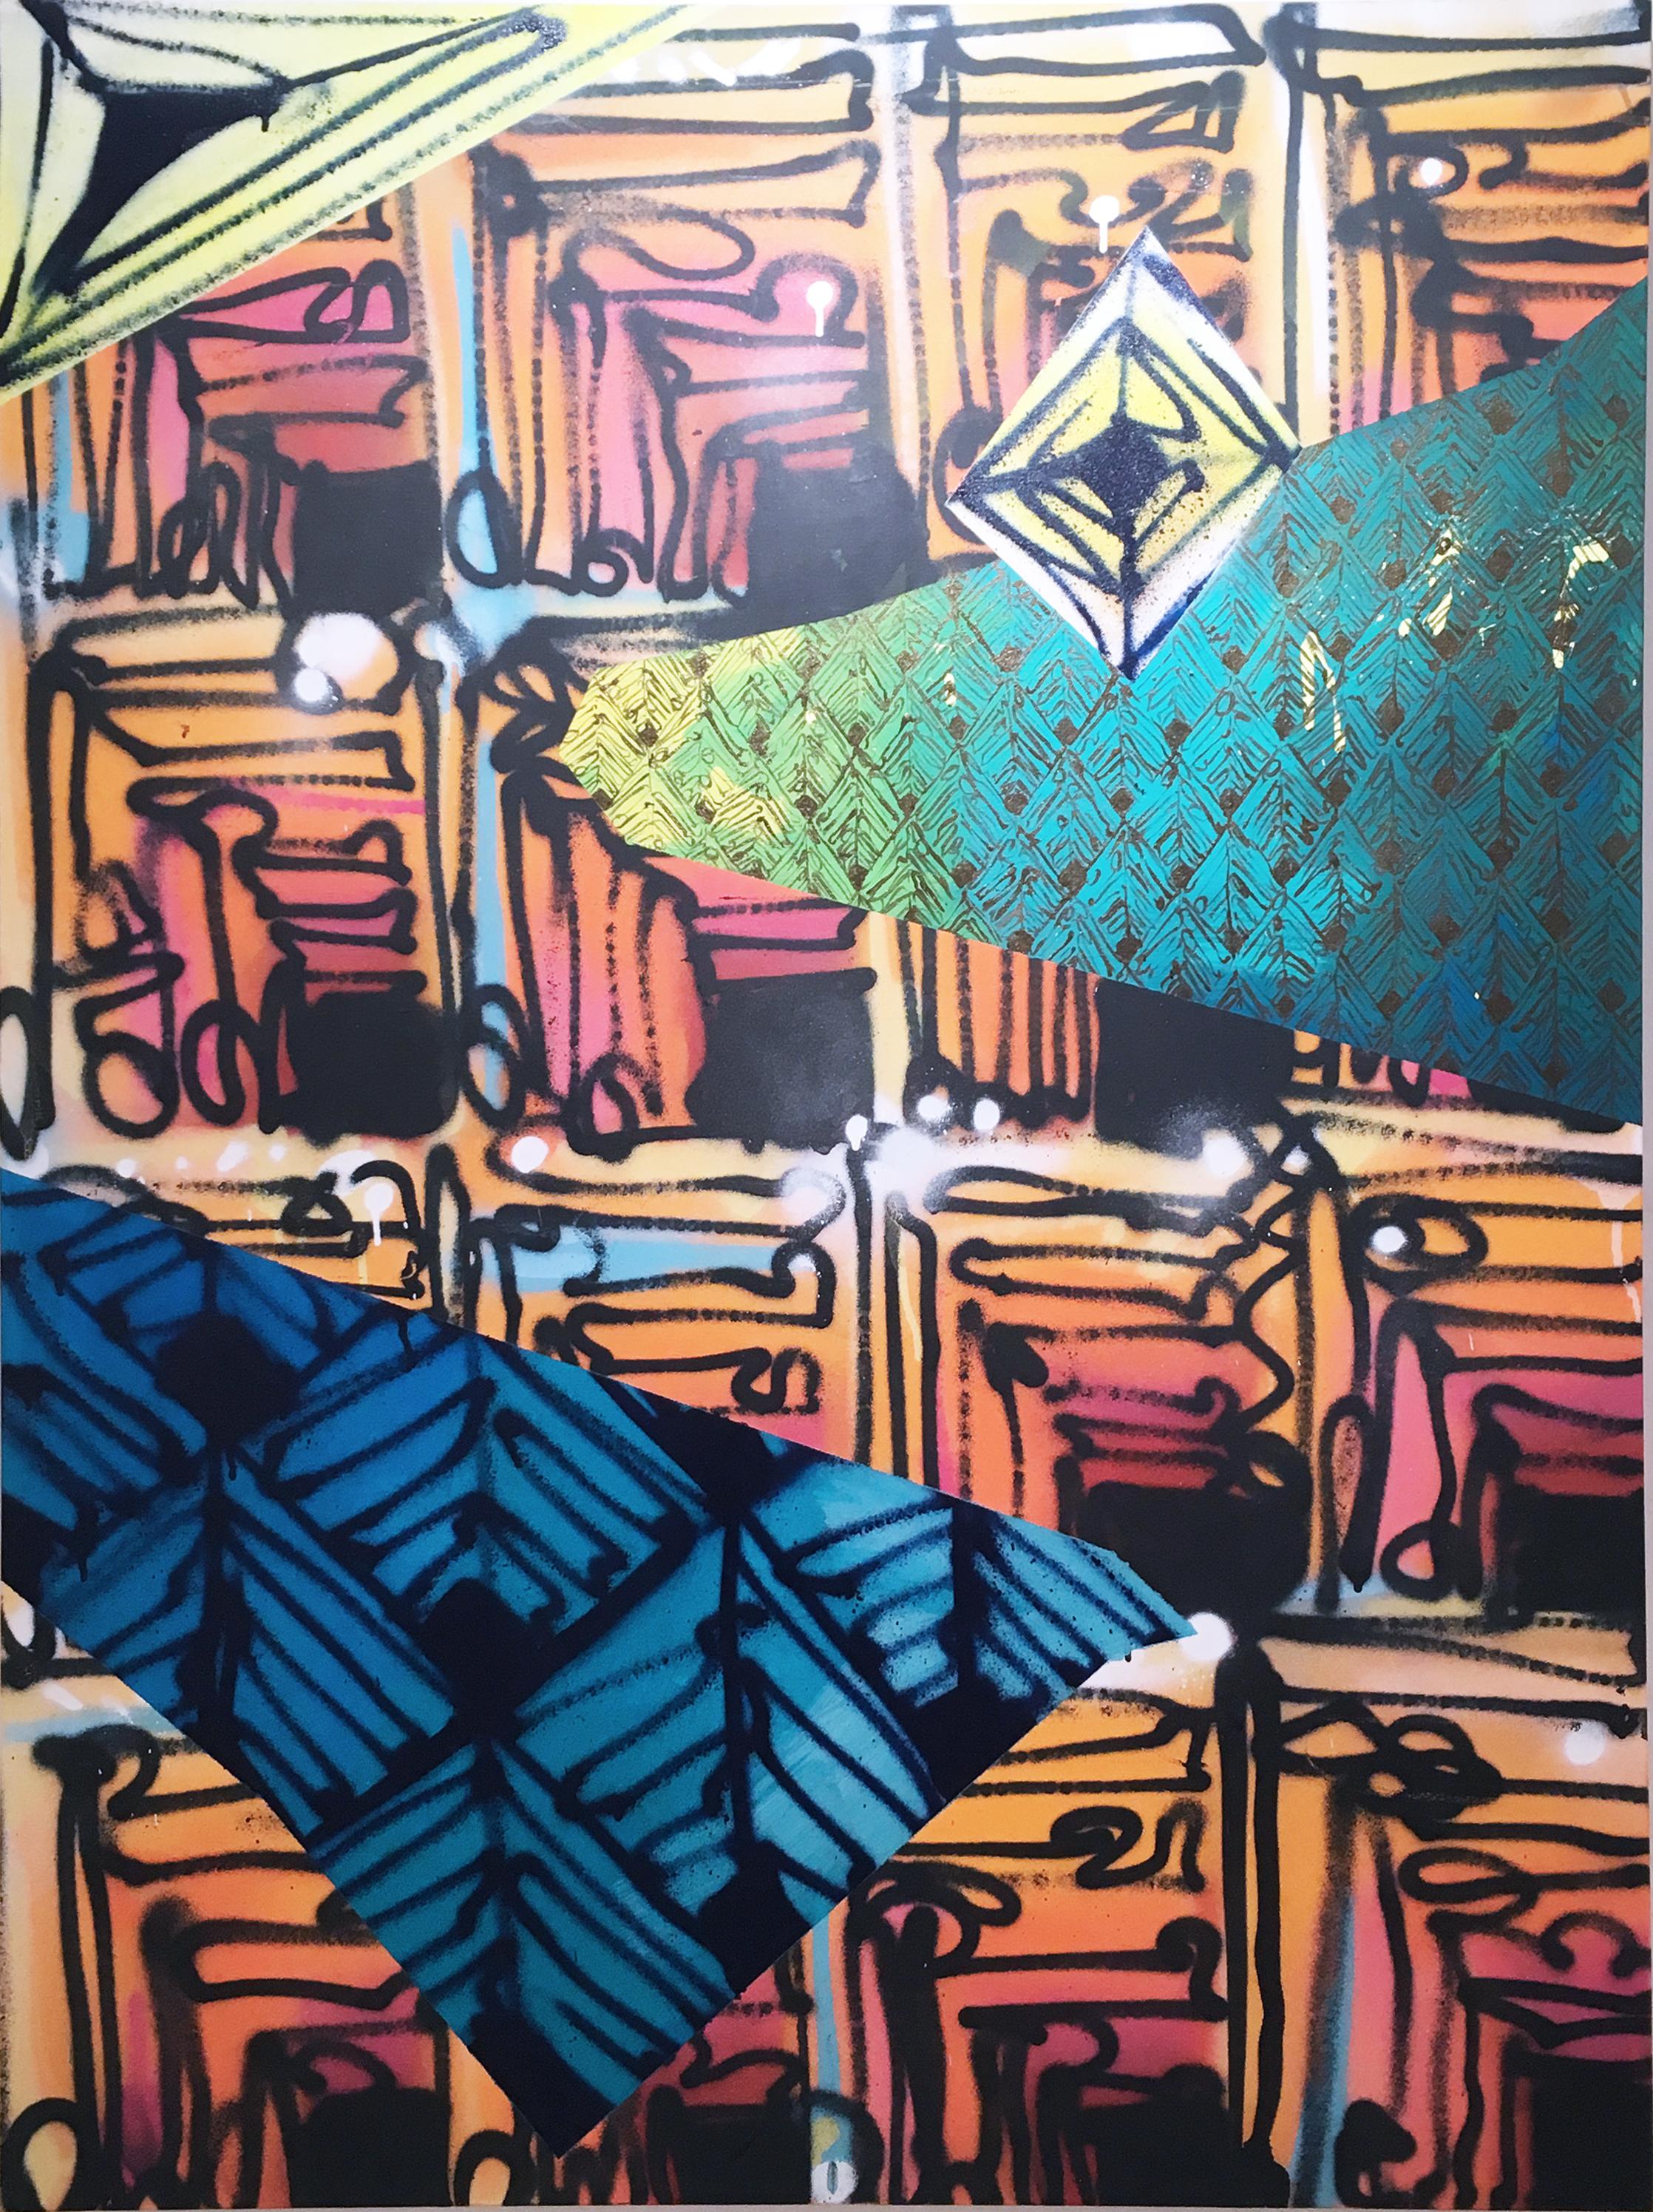 Maelstrom X des Straßenkünstlers Clarence Rich, abstraktes geometrisches Rapportmuster

Abstraktes, abstraktes, geometrisches, sich wiederholendes Muster von Clarence Rich, inspiriert durch das sich wiederholende, kaskadenförmige Quadermuster, das